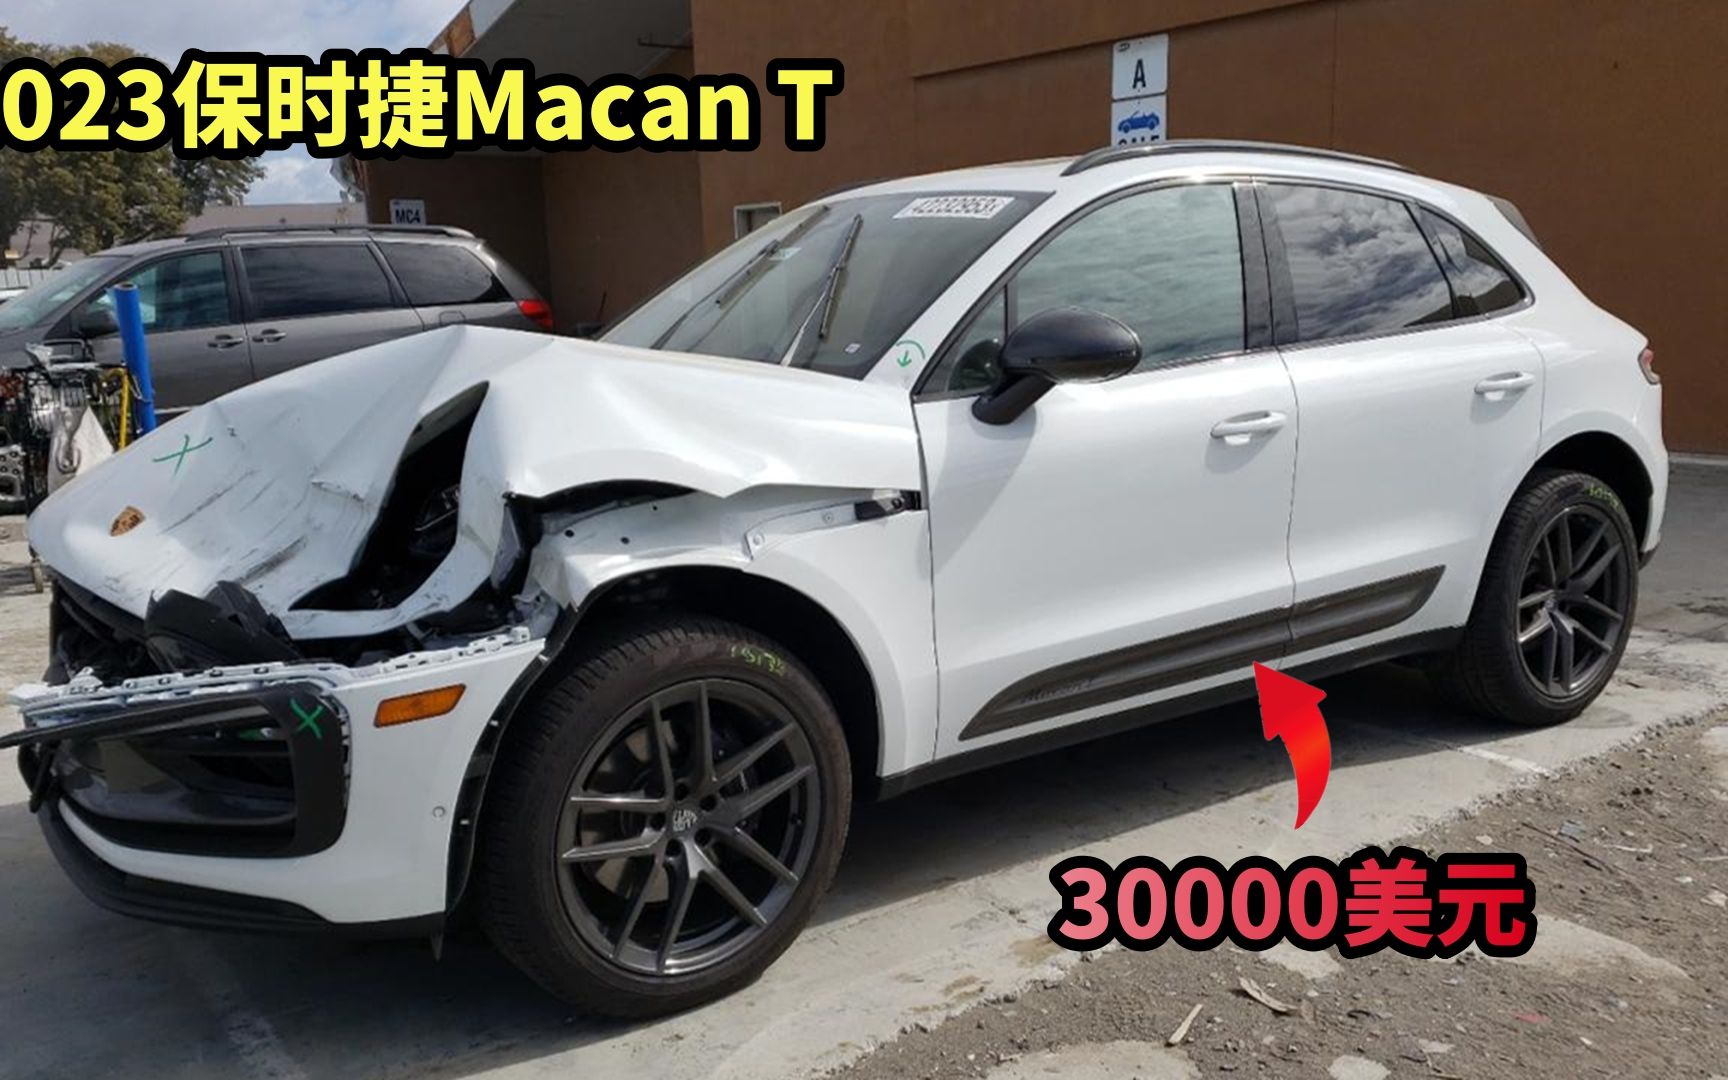 30000美元买下2023保时捷Macan T事故车，修复后居然赚不了太多